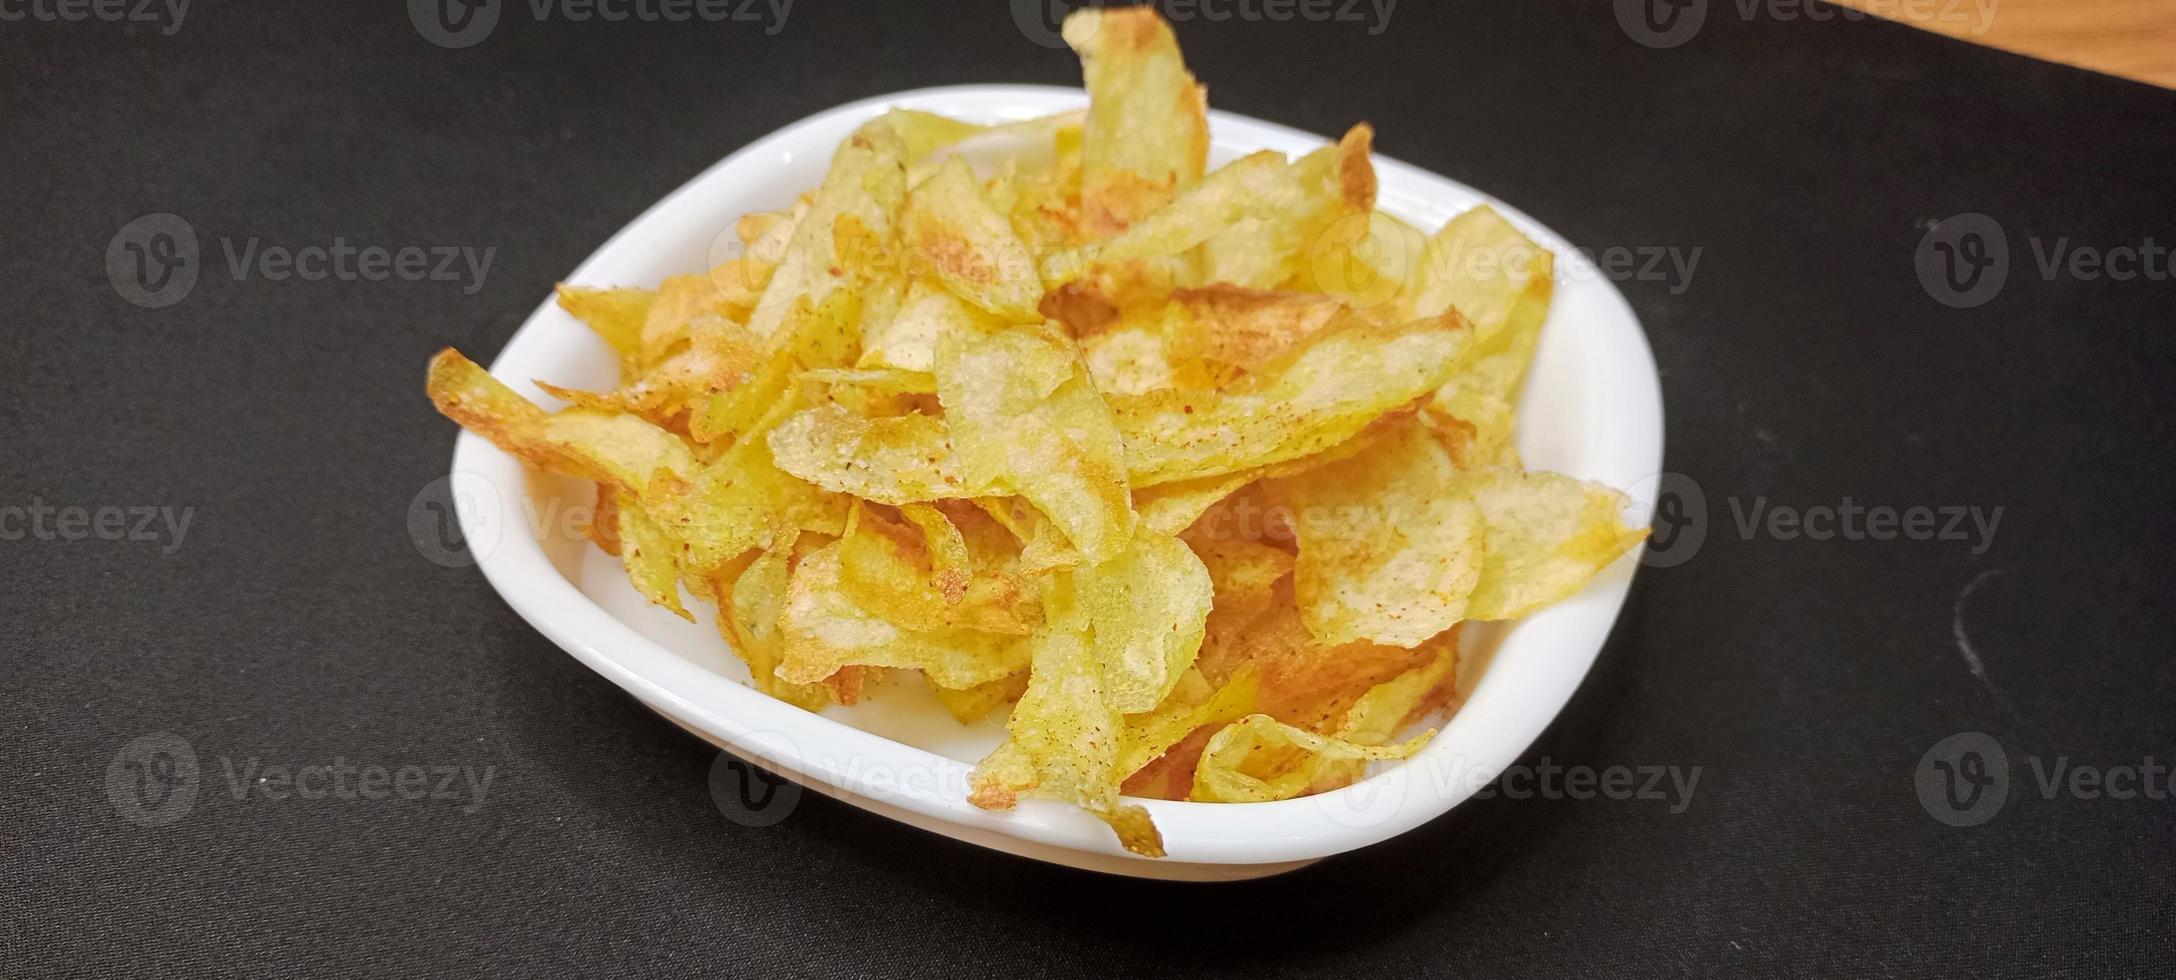 Kartoffelchips, in Indien Aalu-Chips genannt, Chips-Rezept foto